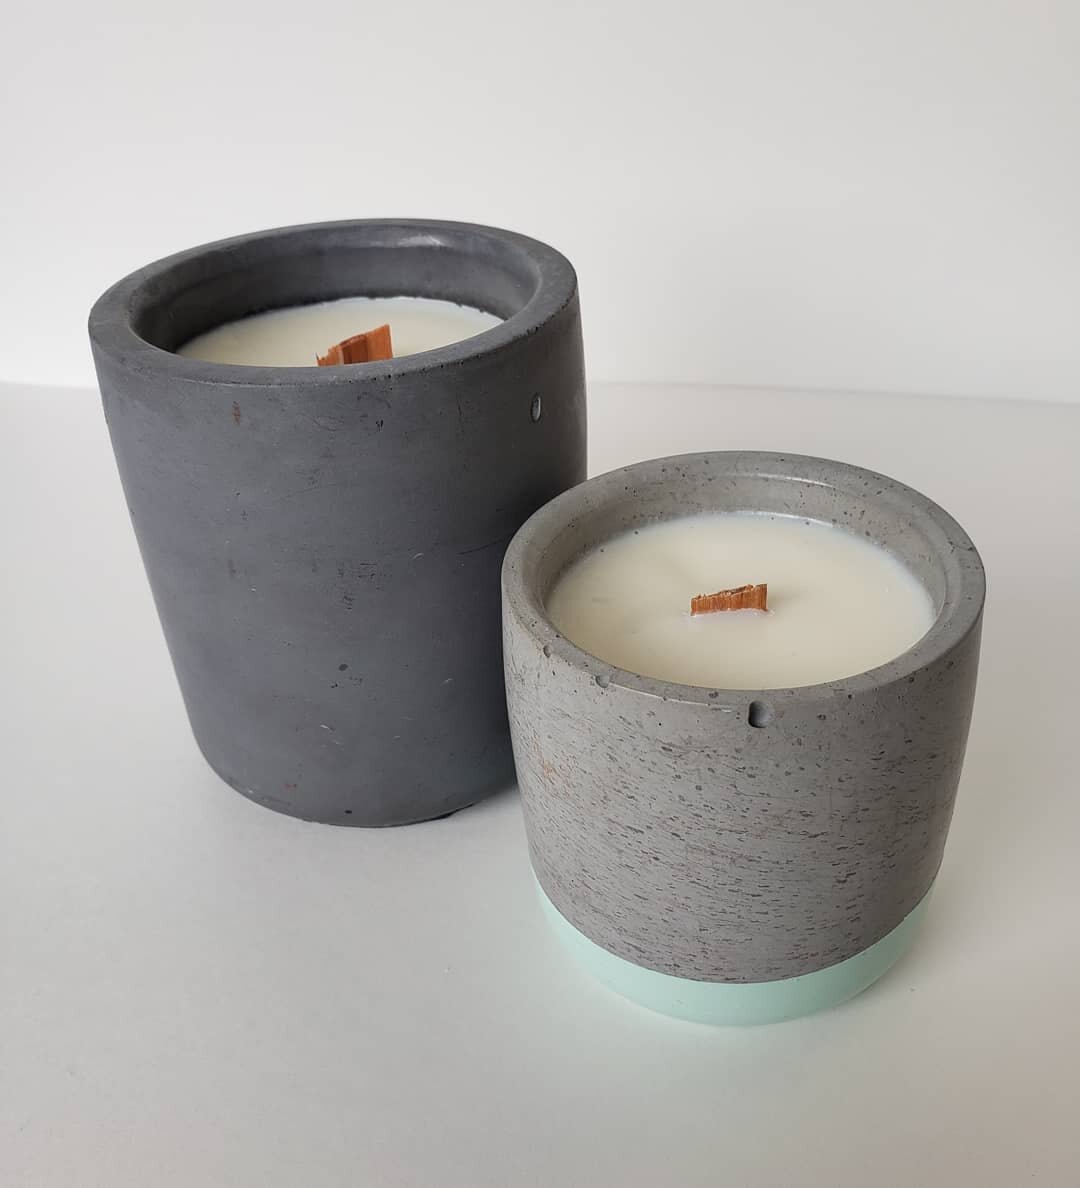 2 pouces haute qualité pré ciré mèches avec SUSTAINERS POUR candle making ☯ 5 cm 